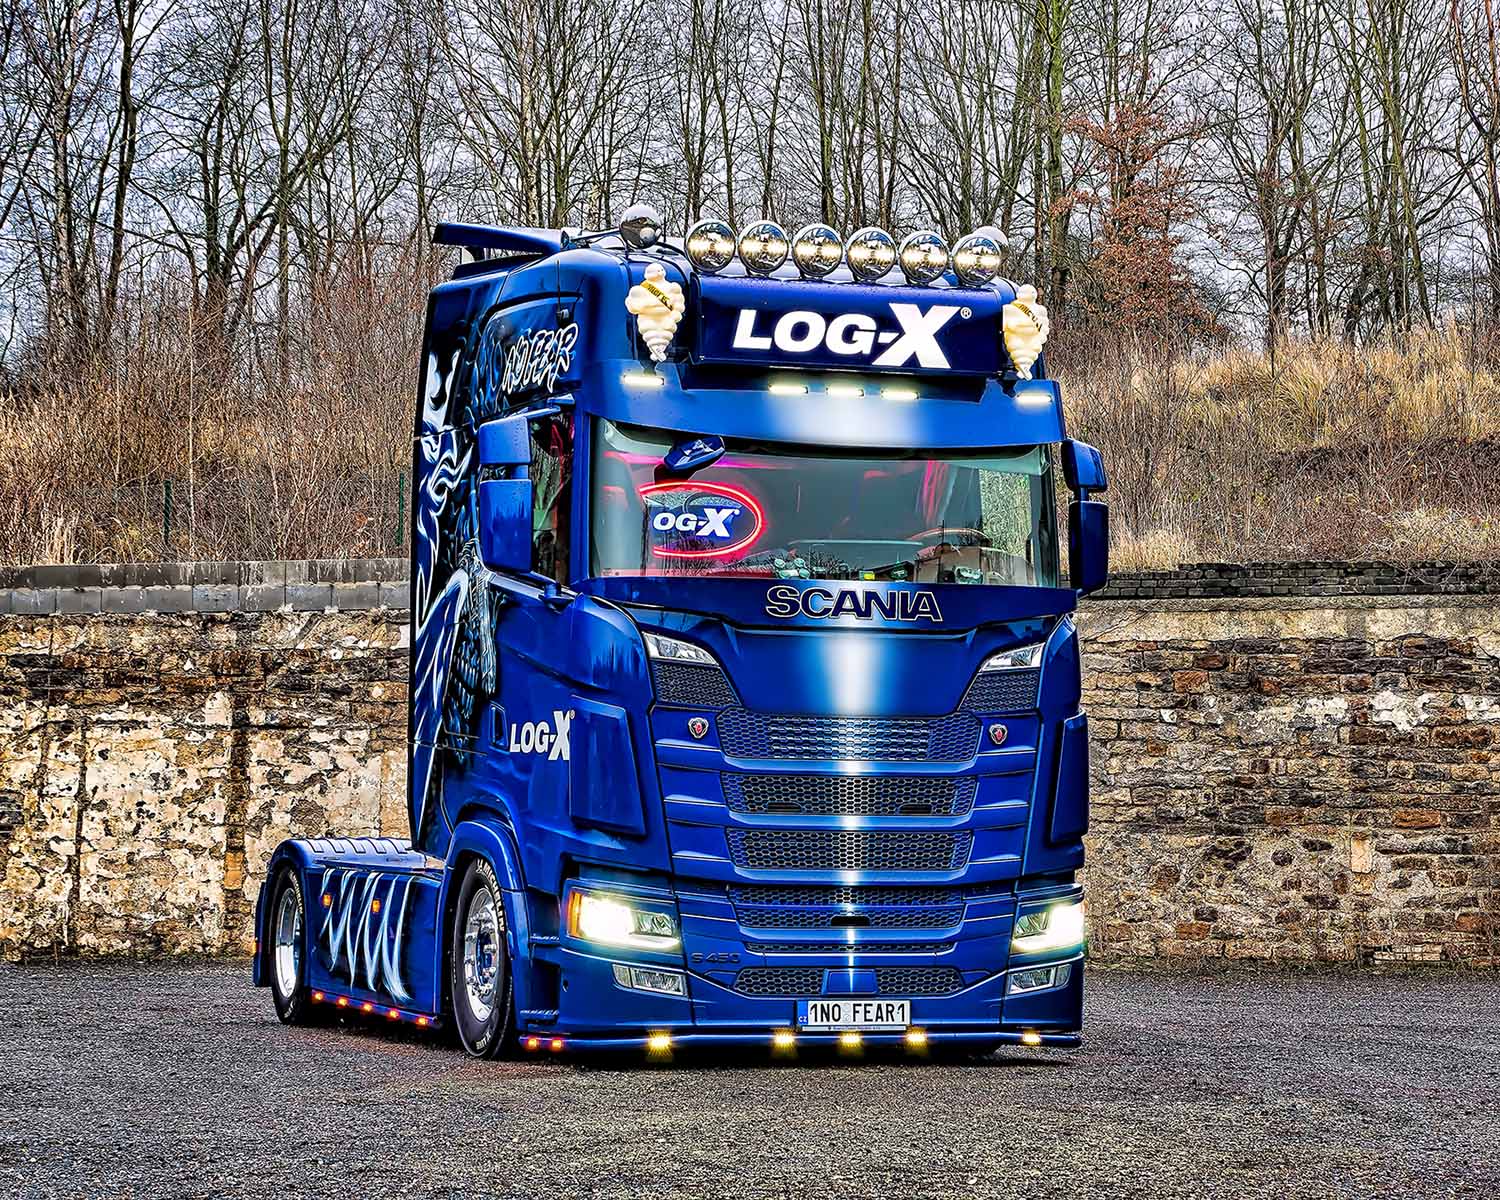 Tahač Scania NO FEAR společnosti LOG-X od Jan Stojan Photography ©